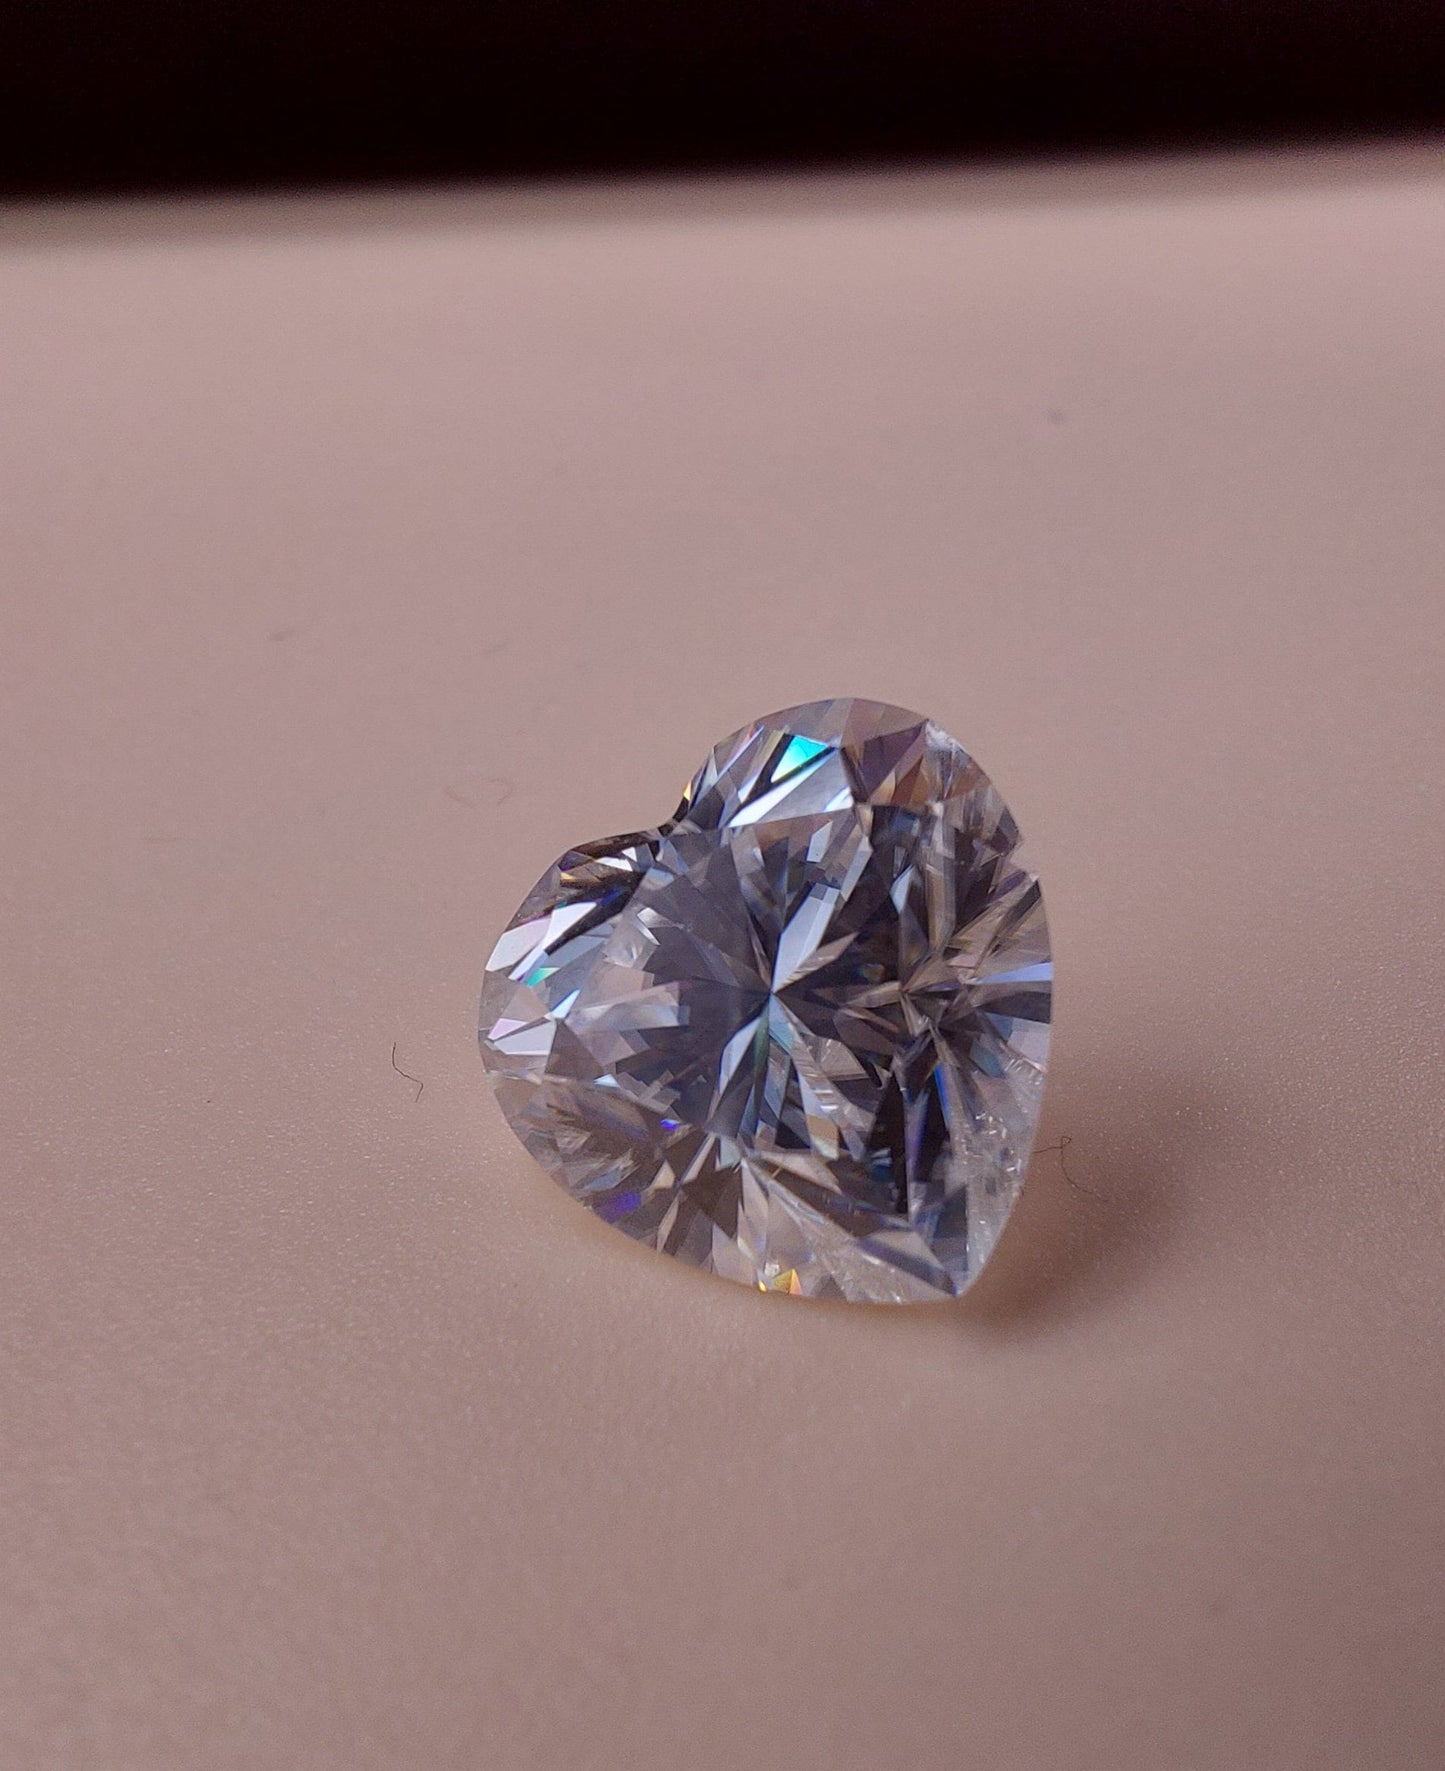 Heart moissainite - Heart Shape moissanite - D Color VVS1 Moissanite Stone with GRA Certificate